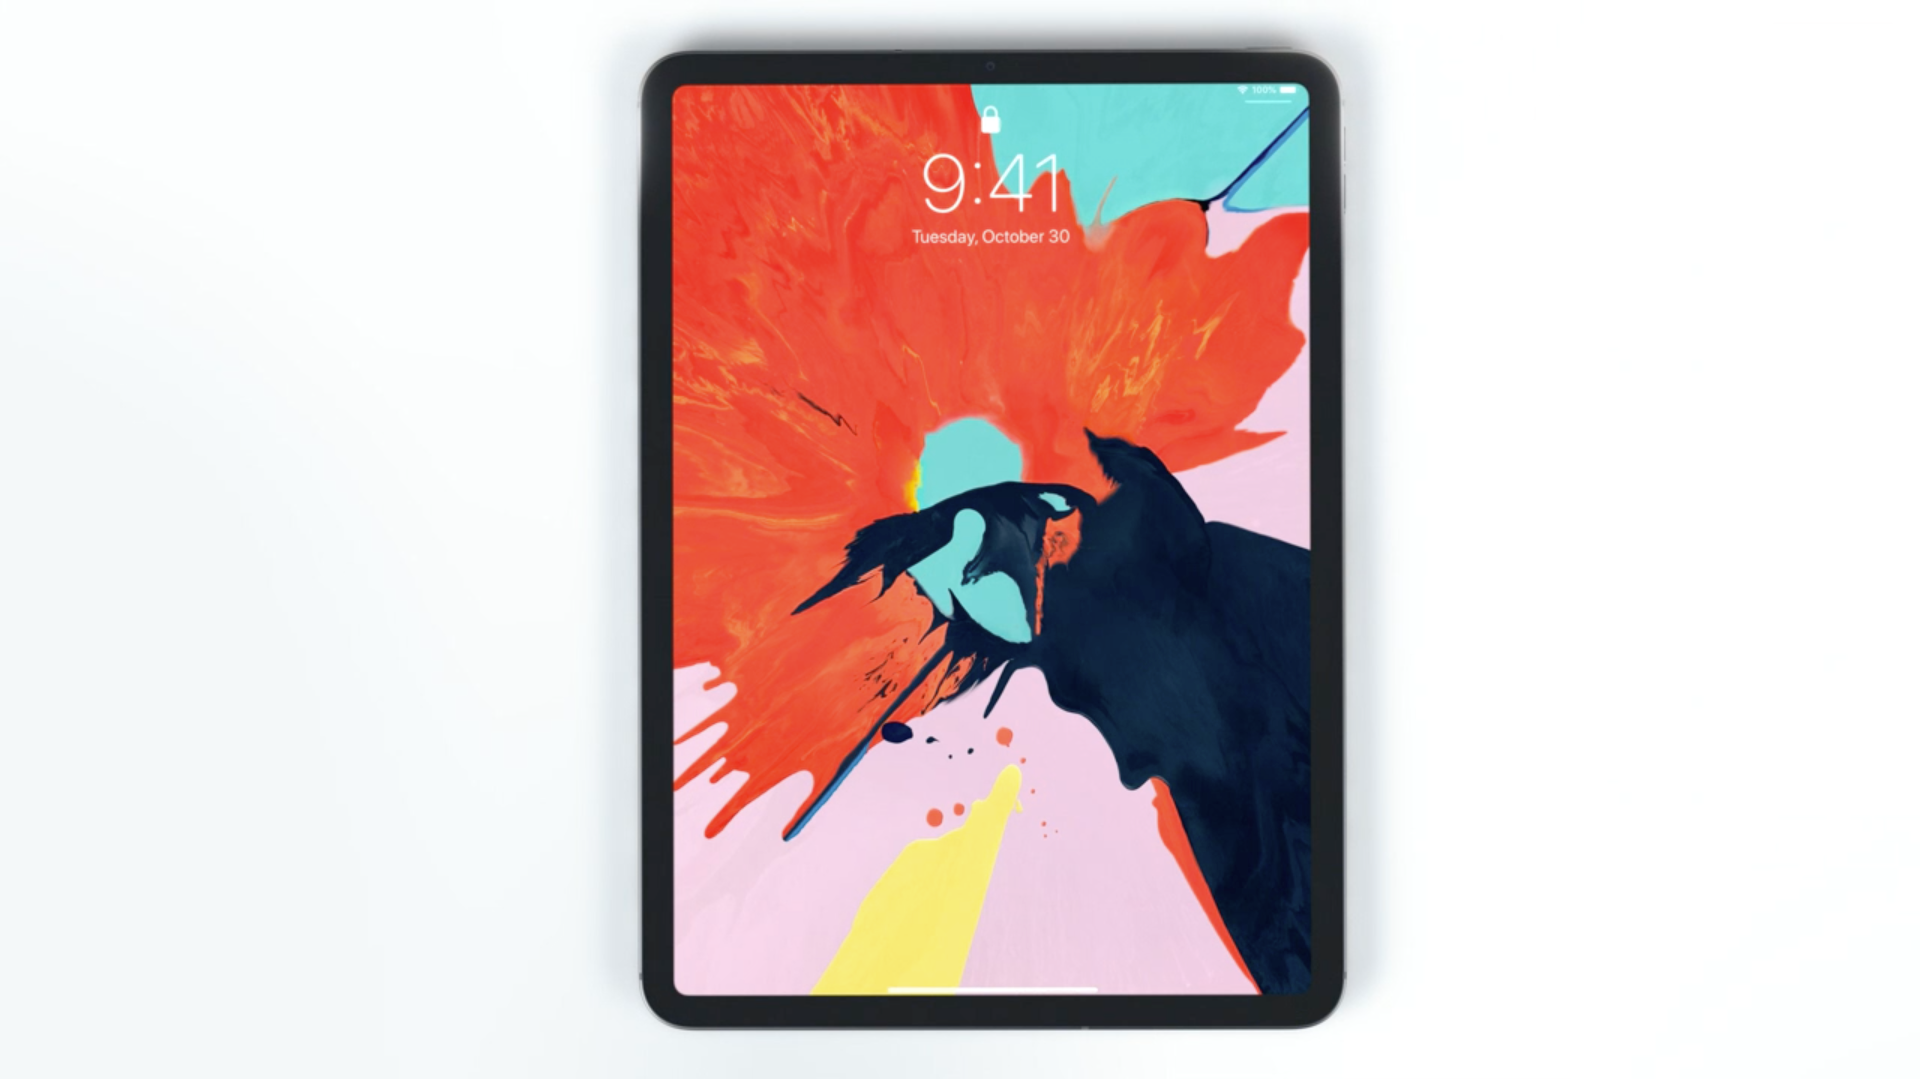 iPad Pro 2018 setzt auf USB-C und Face ID | heise online